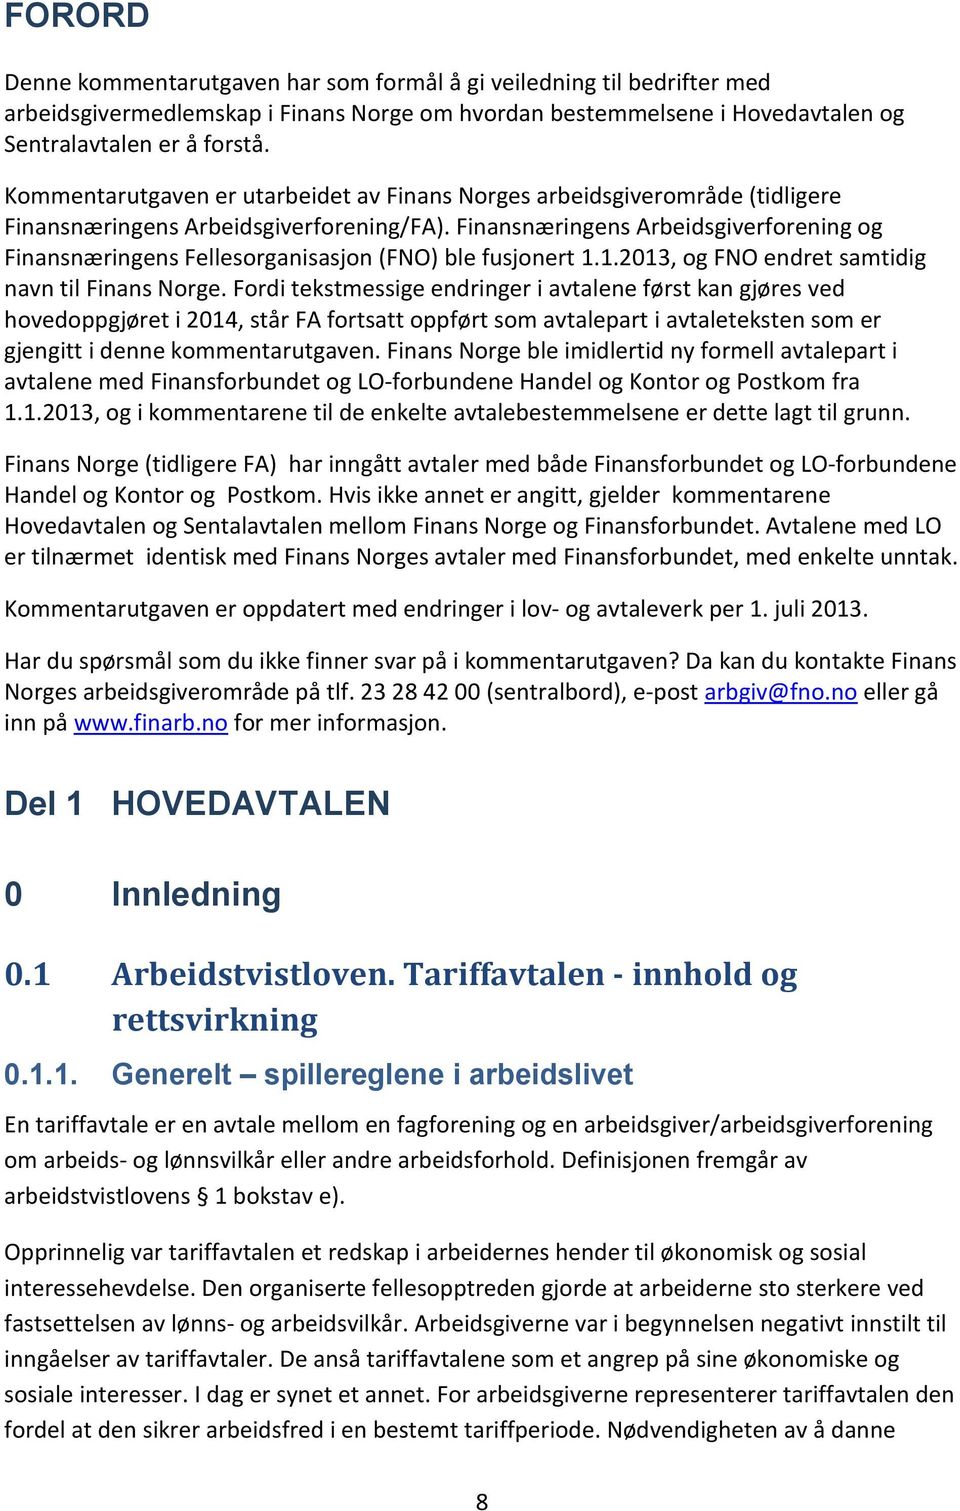 Finansnæringens Arbeidsgiverforening og Finansnæringens Fellesorganisasjon (FNO) ble fusjonert 1.1.2013, og FNO endret samtidig navn til Finans Norge.